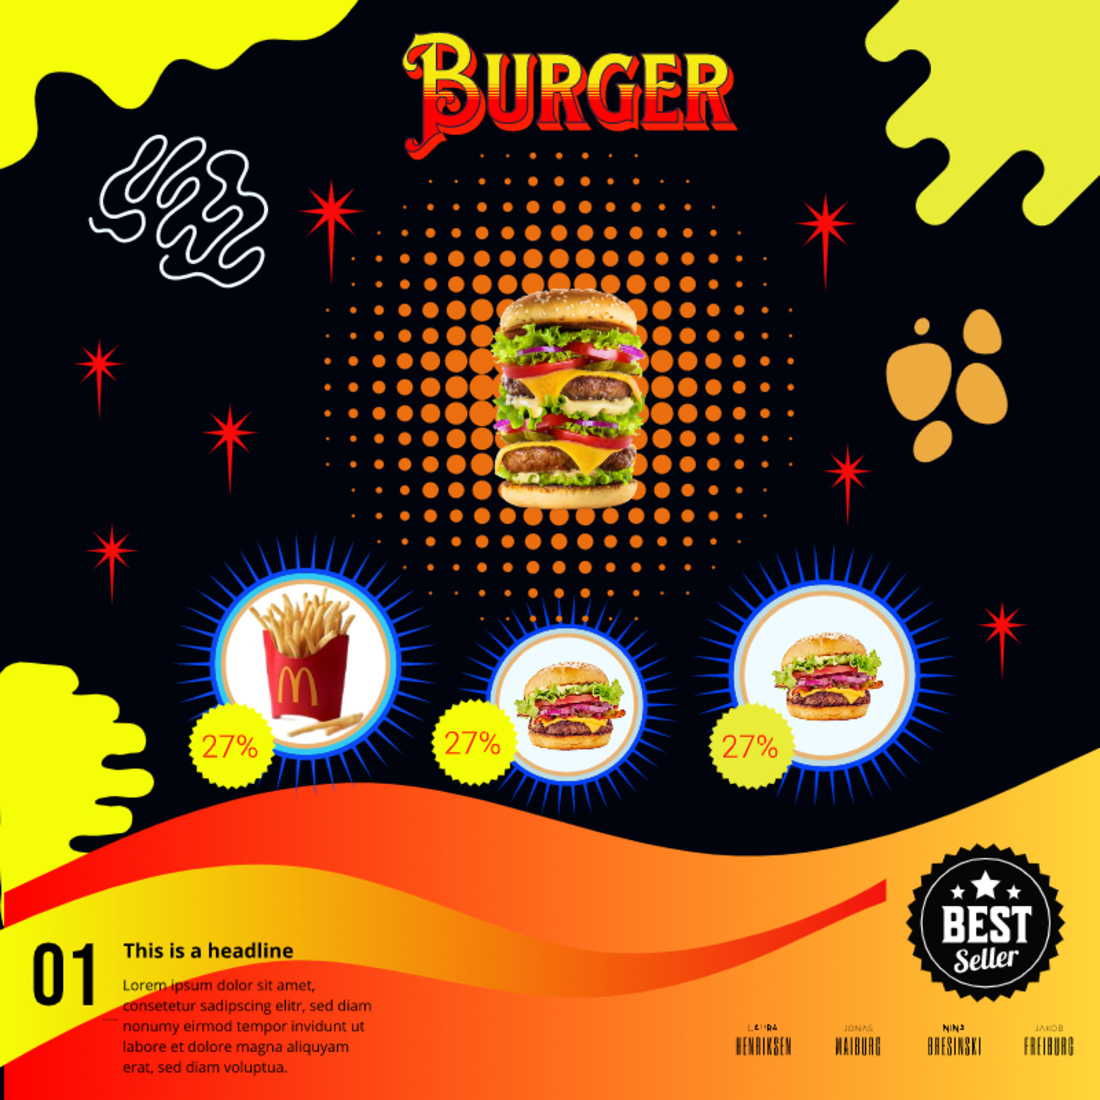 Burger Shop Banner Design cover image.